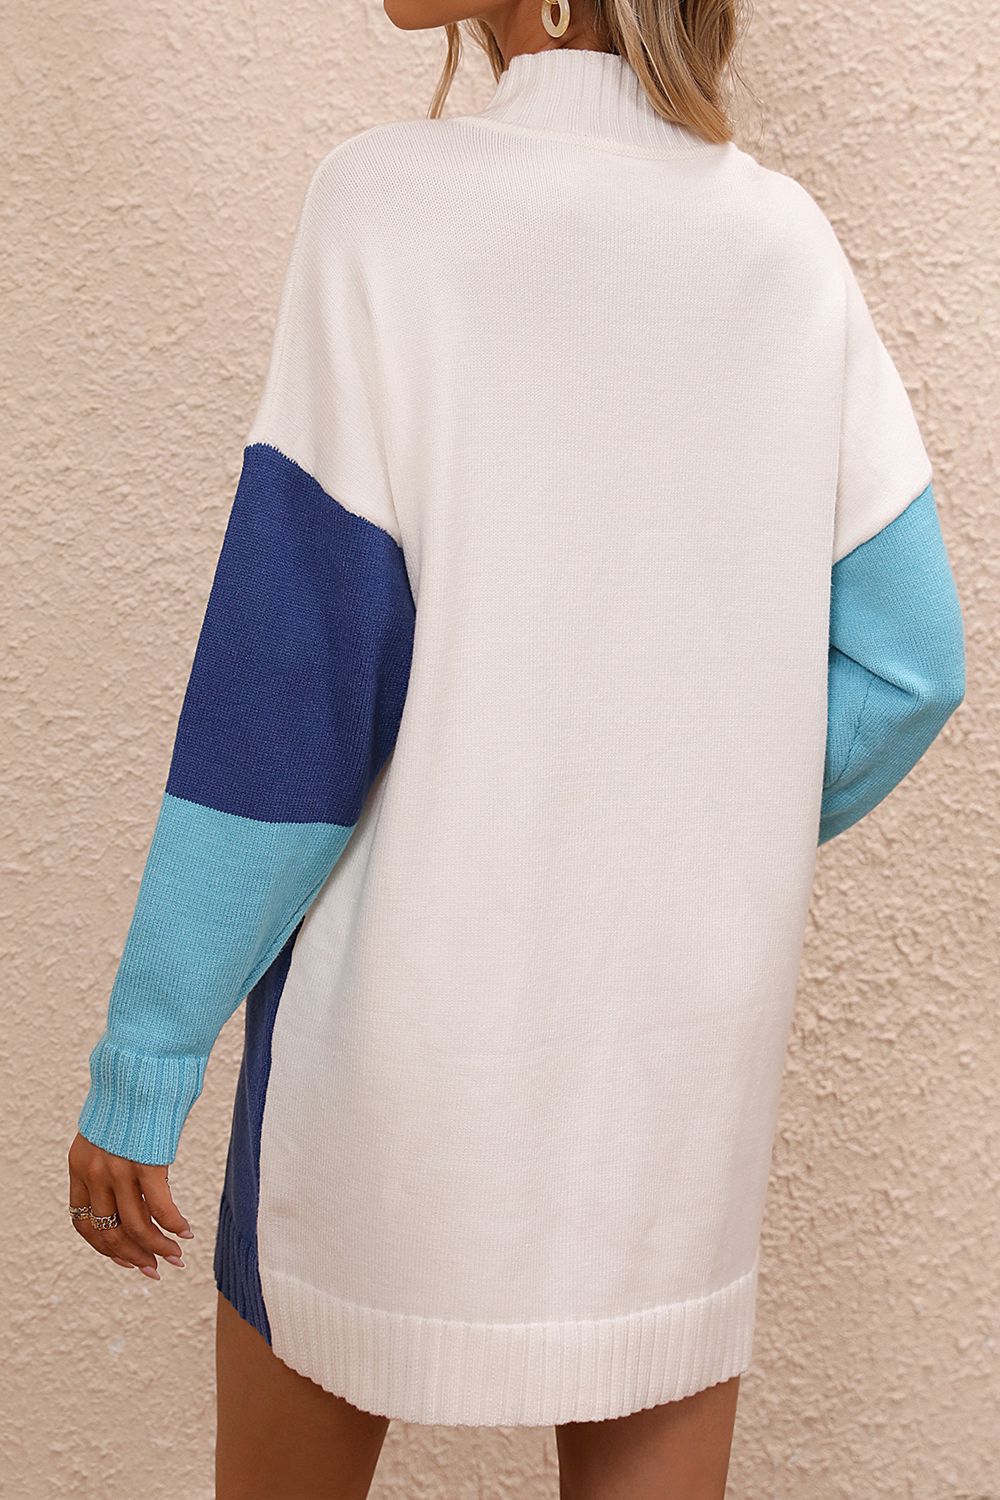 TrendSetEE Color Block Mock Neck Dropped Shoulder Sweater Dress